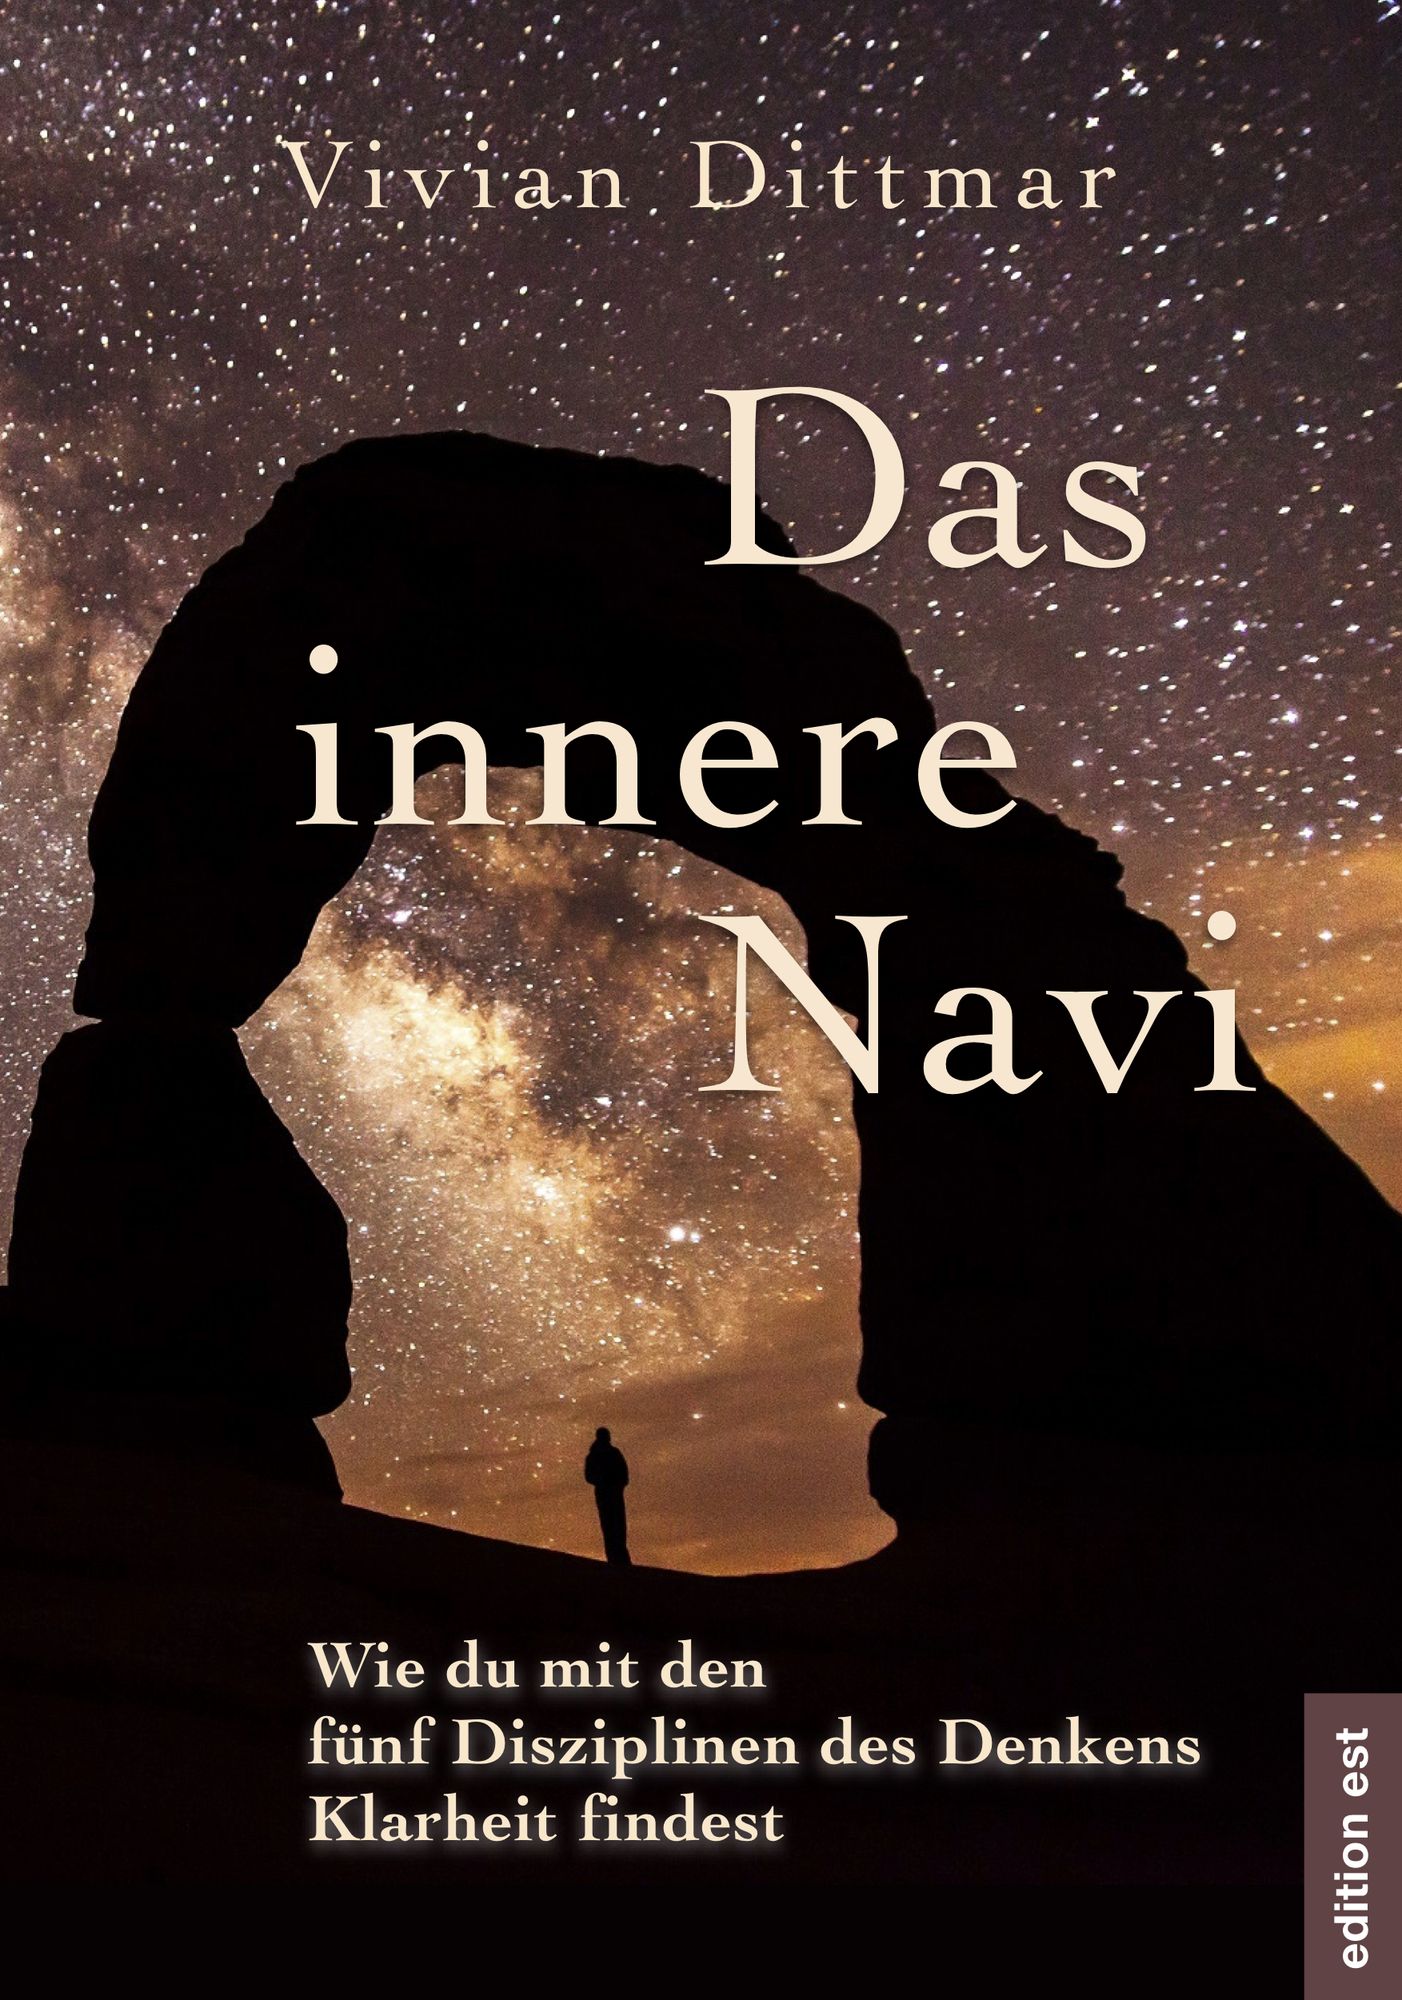 Das innere Navi – Wie du mit den fünf Disziplinen des Denkens Klarheit  findest' von 'Vivian Dittmar' - Buch - '978-3-940773-17-3